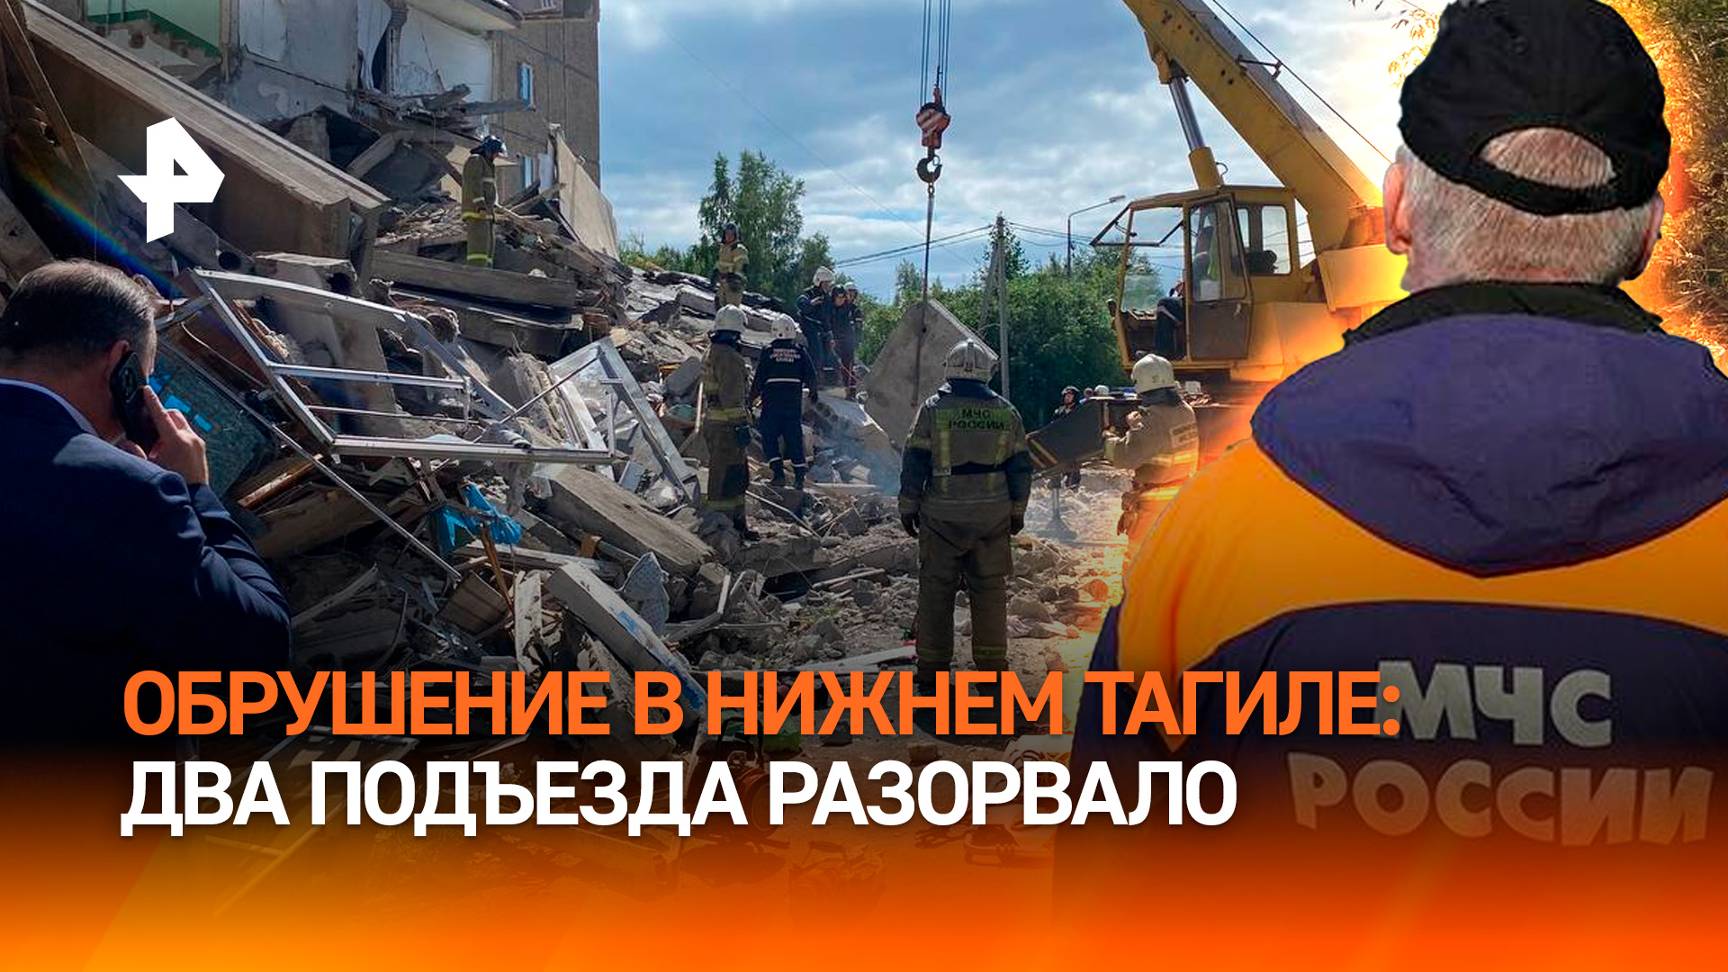 Из-под завалов  плач, два подъезда разорвало: взрыв газа в жилом доме в Нижнем Тагиле / РЕН Новости